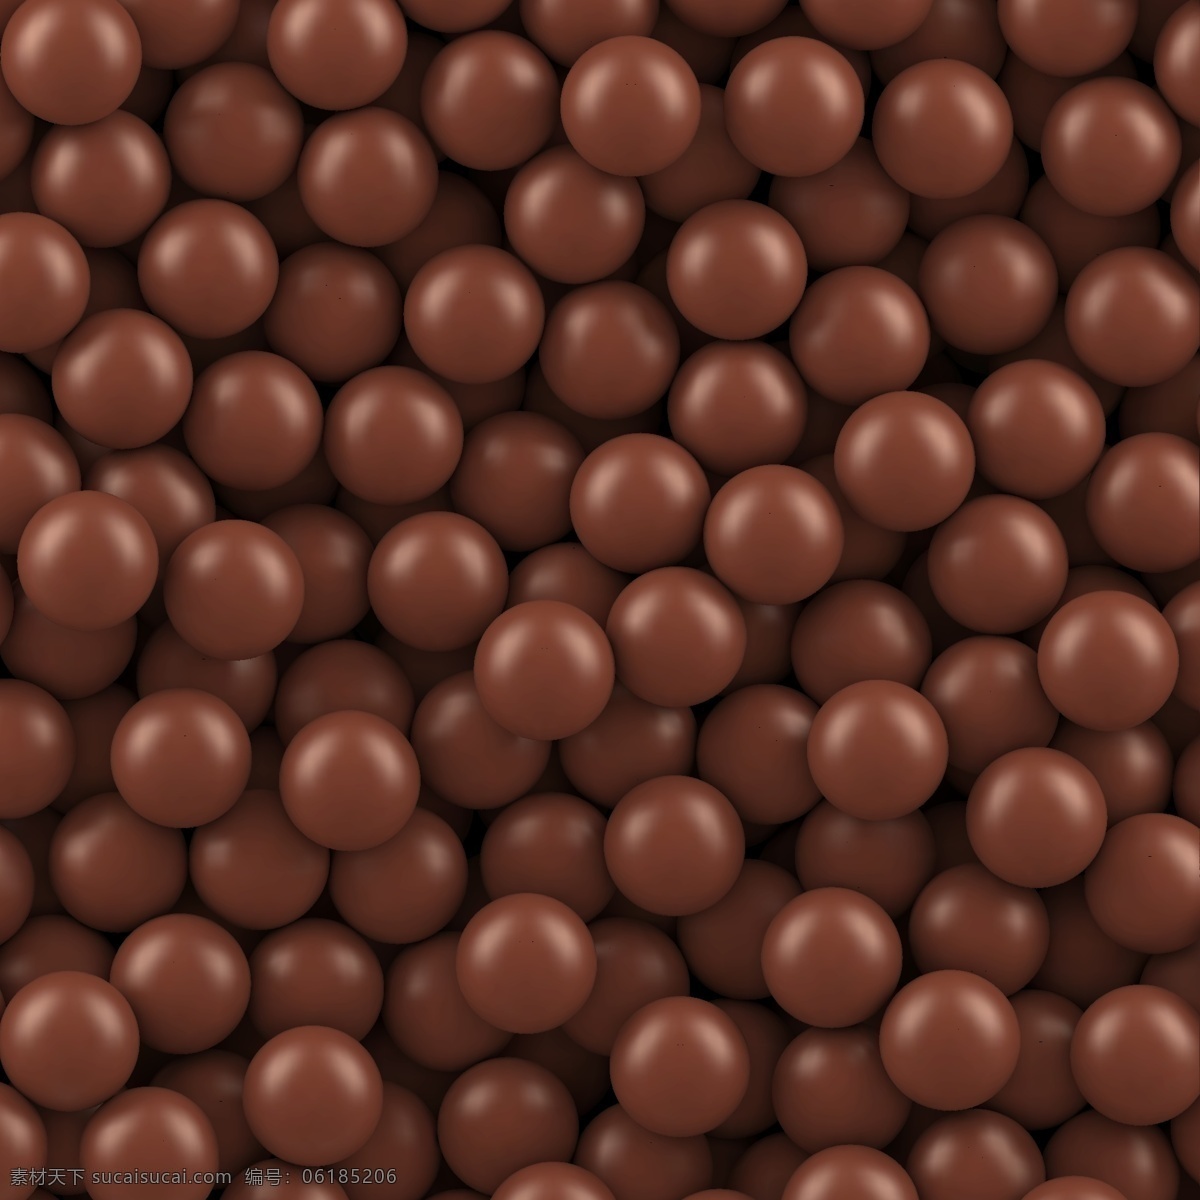 巧克力 豆 背景图片 甜食 巧克力豆 无缝背景 矢量图 格式 矢量 高清图片